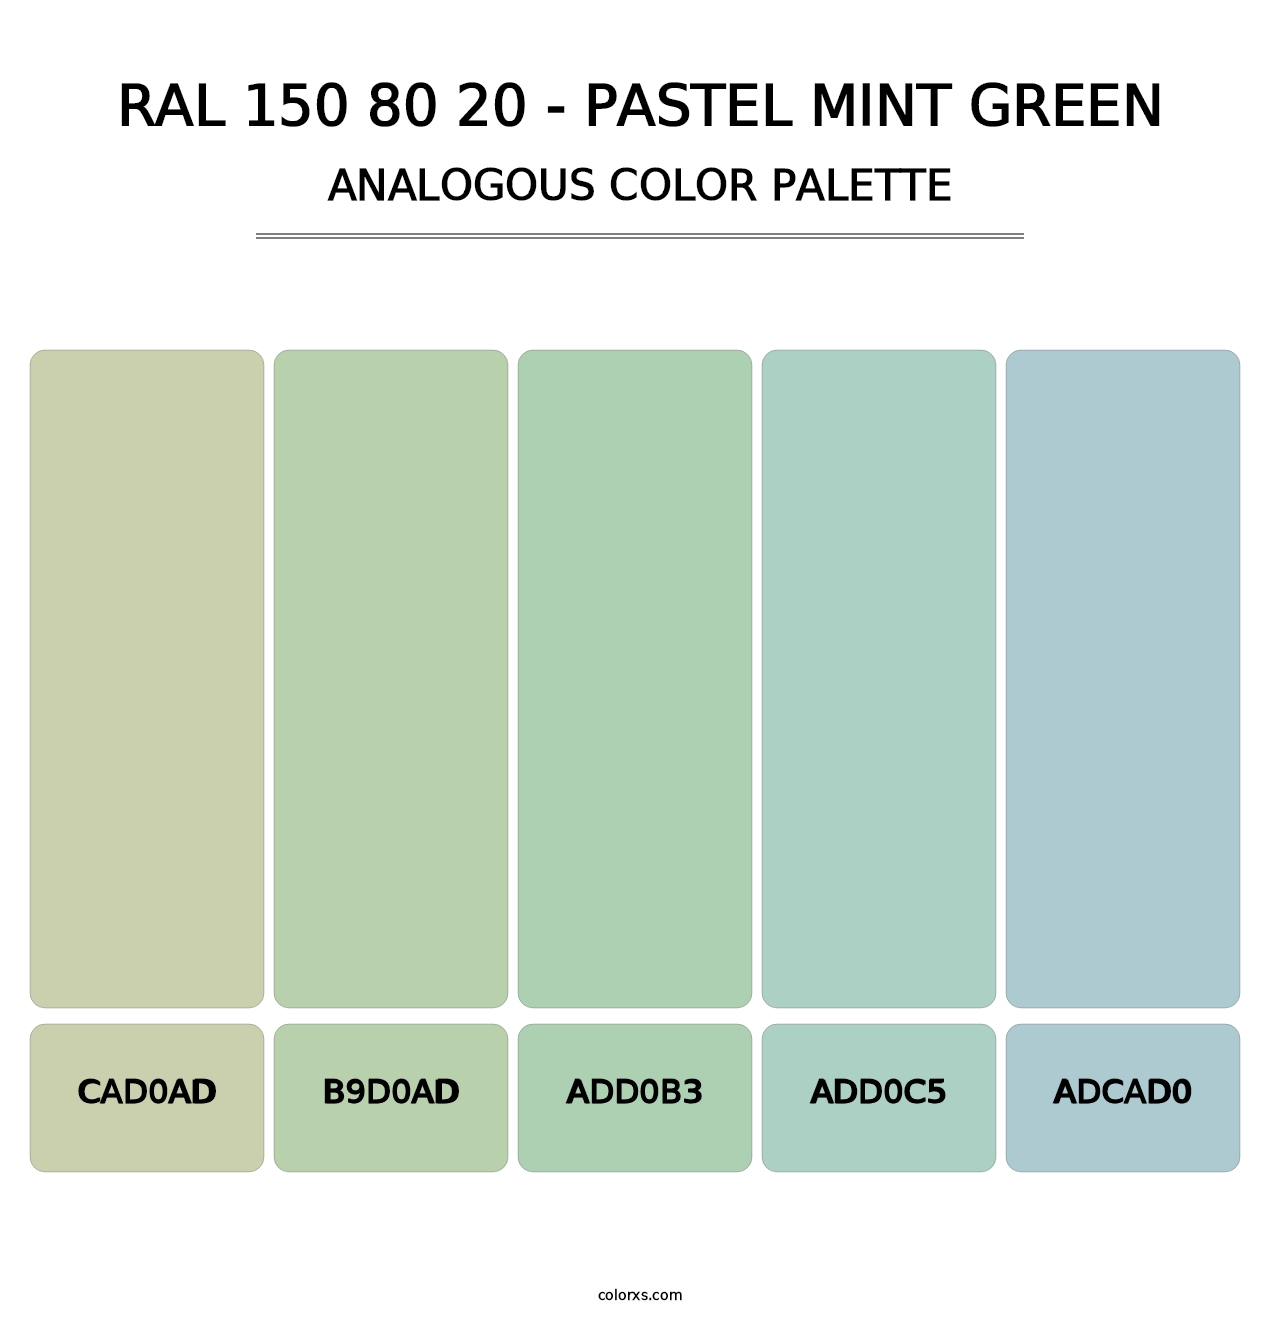 RAL 150 80 20 - Pastel Mint Green - Analogous Color Palette